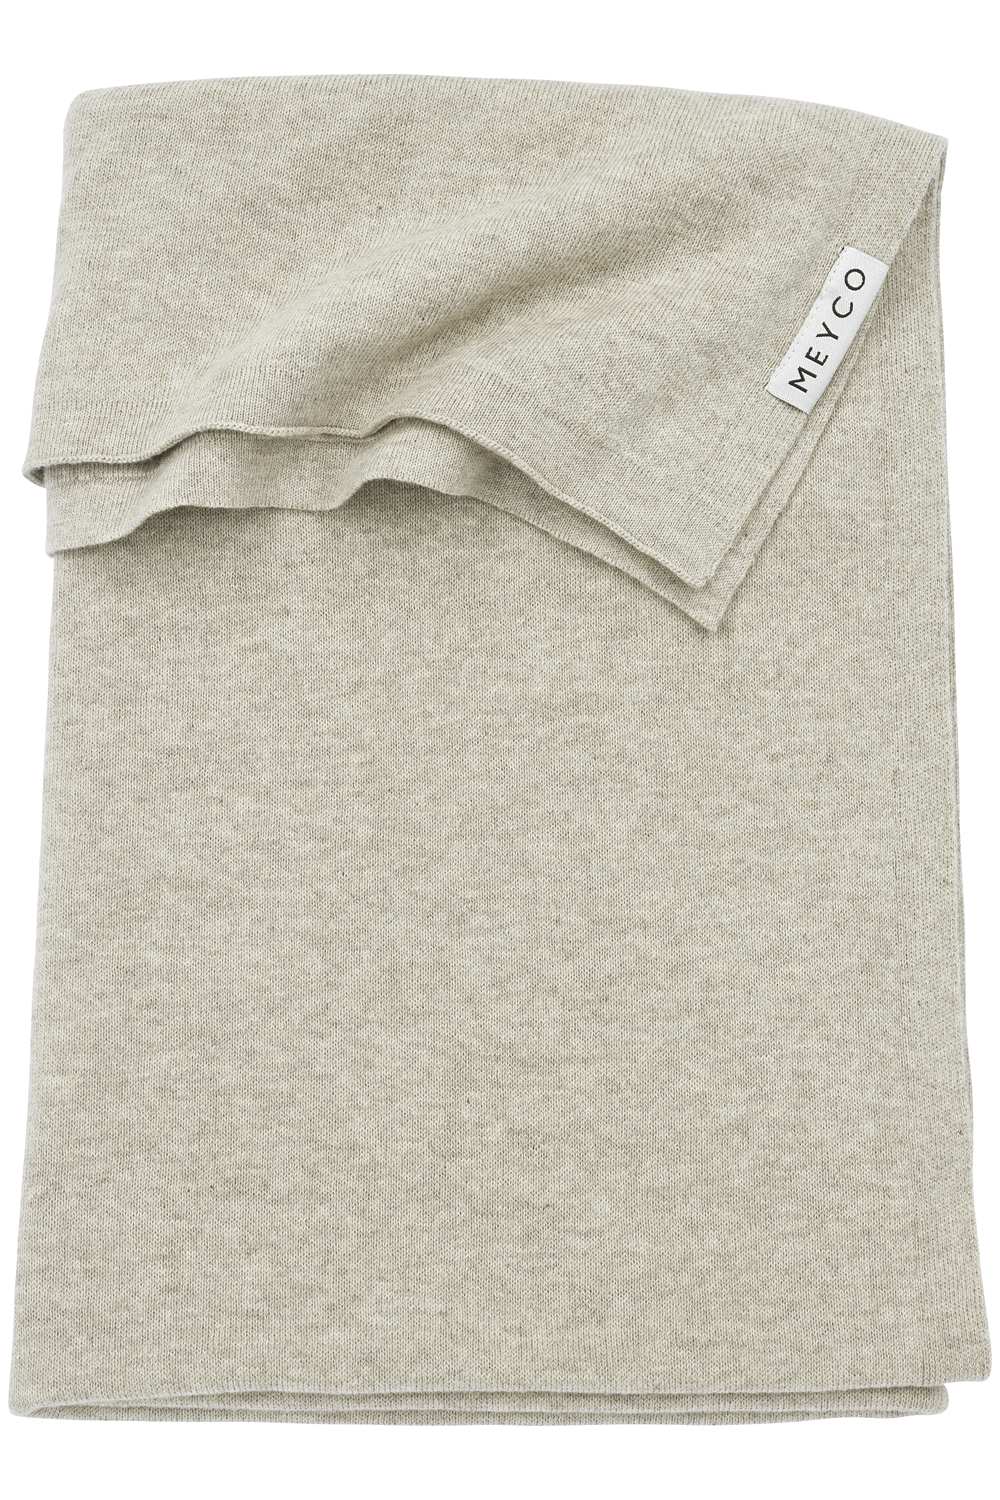 Ledikant deken Knit Basic - sand melange - 100x150cm